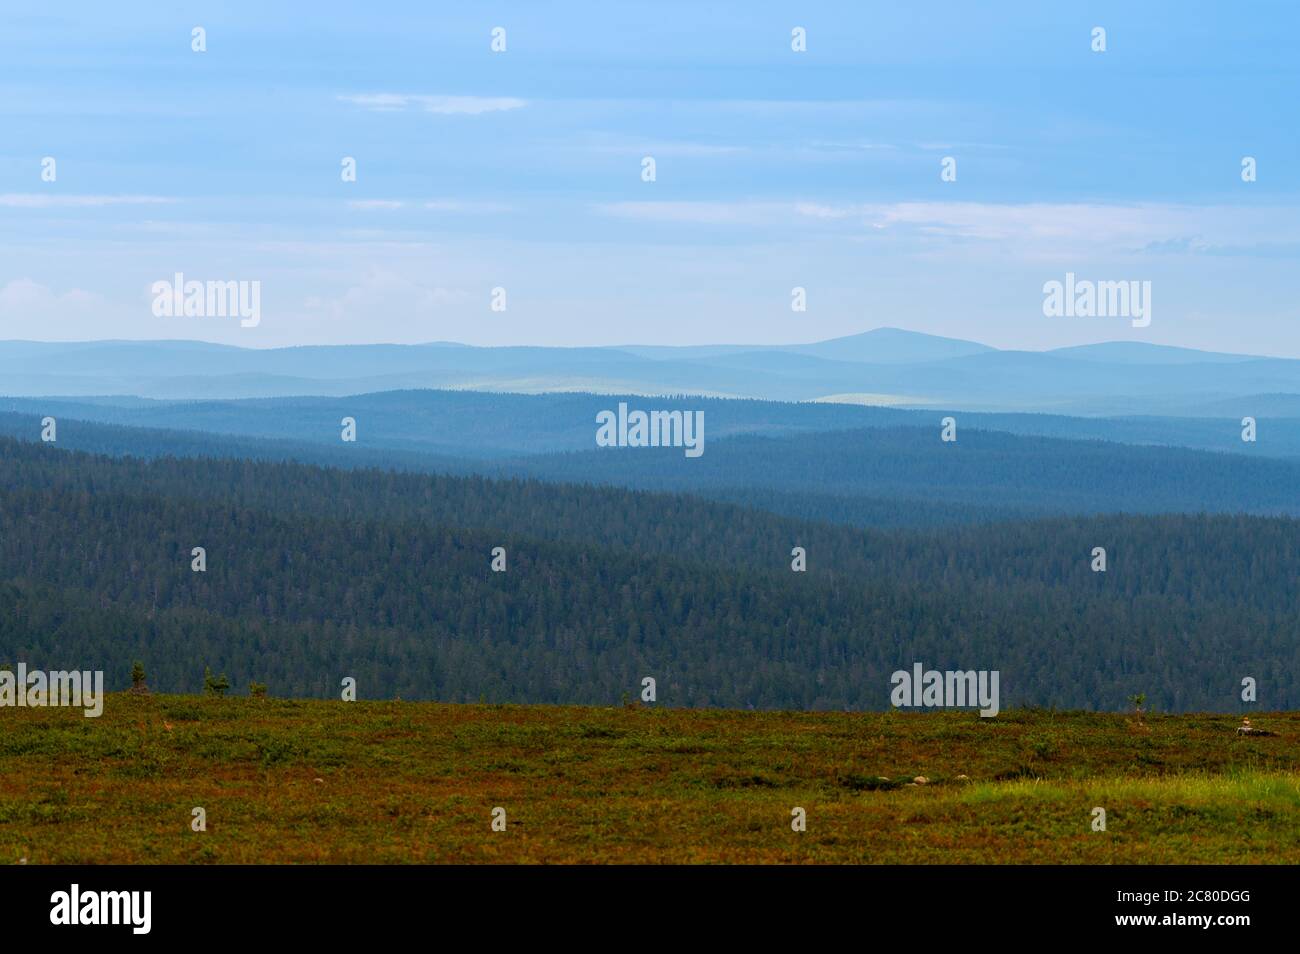 A beautiful natural view of the wilderness at the peak of Kaunispää fell in Saariselkä, Lapland. Stock Photo